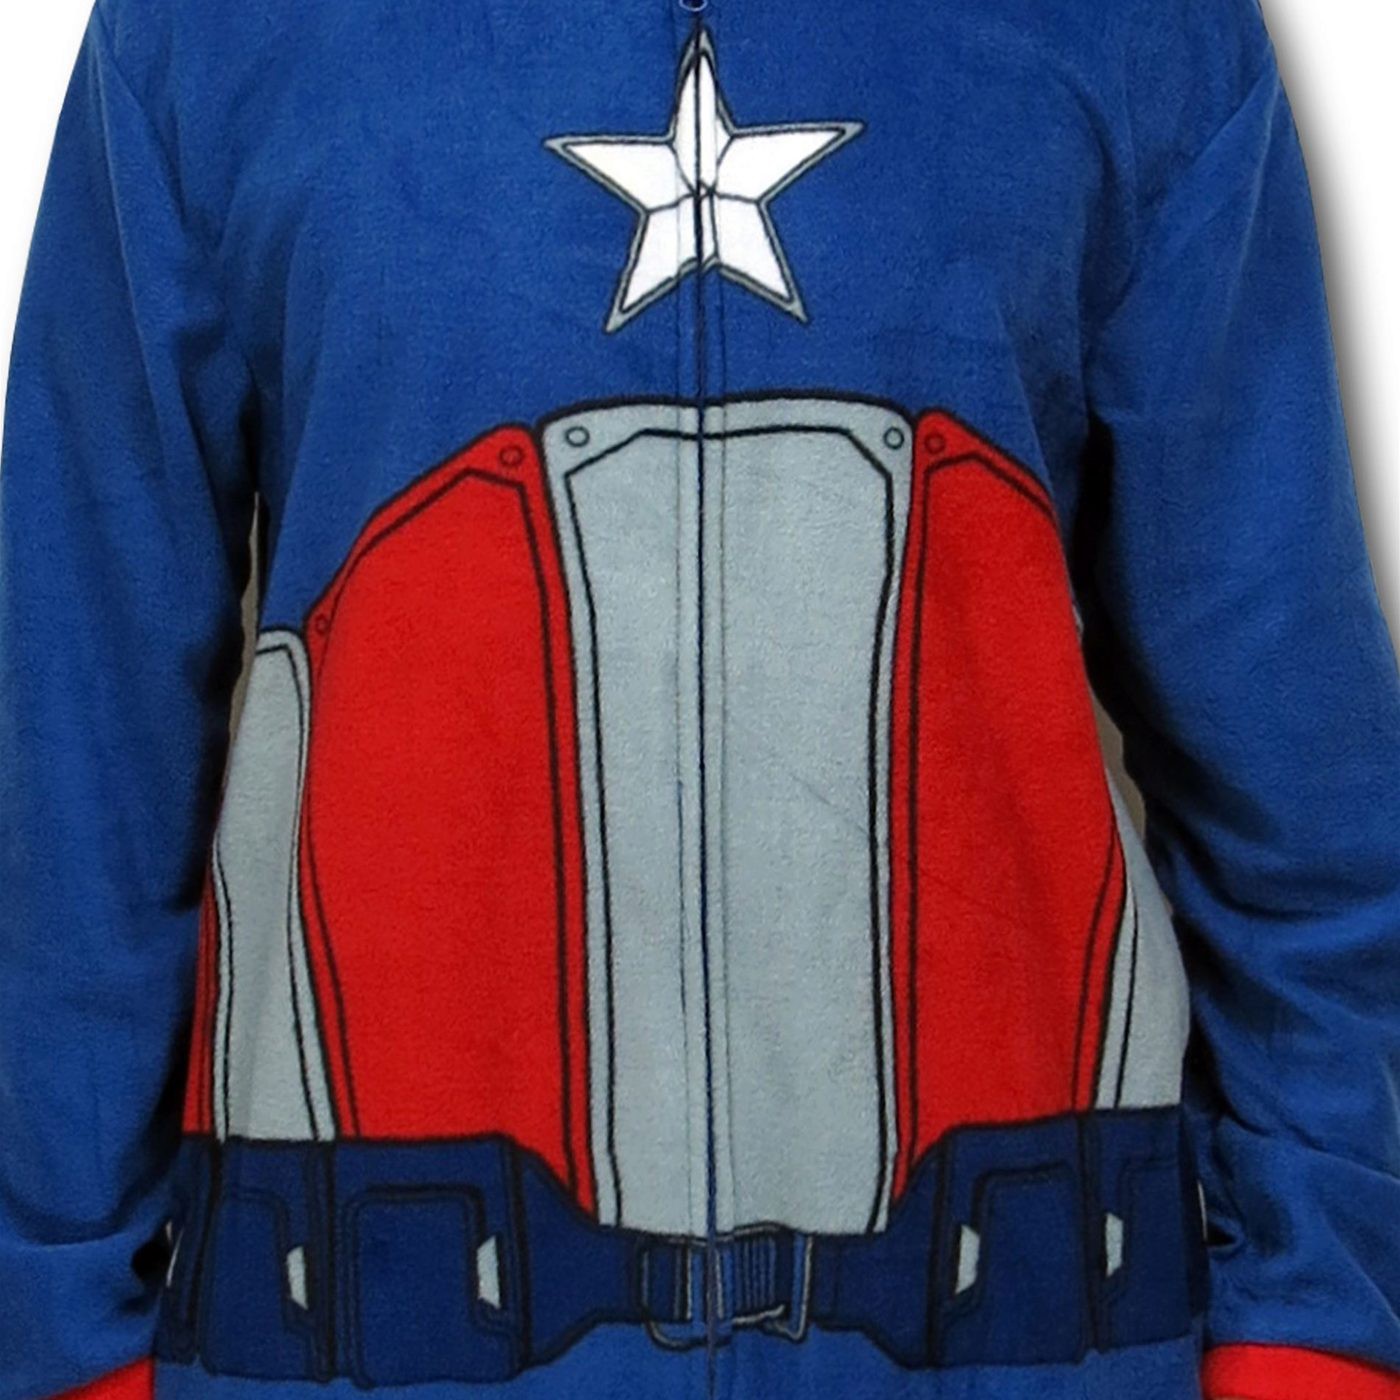 Captain America Fleece Costume Union Suit Pajamas